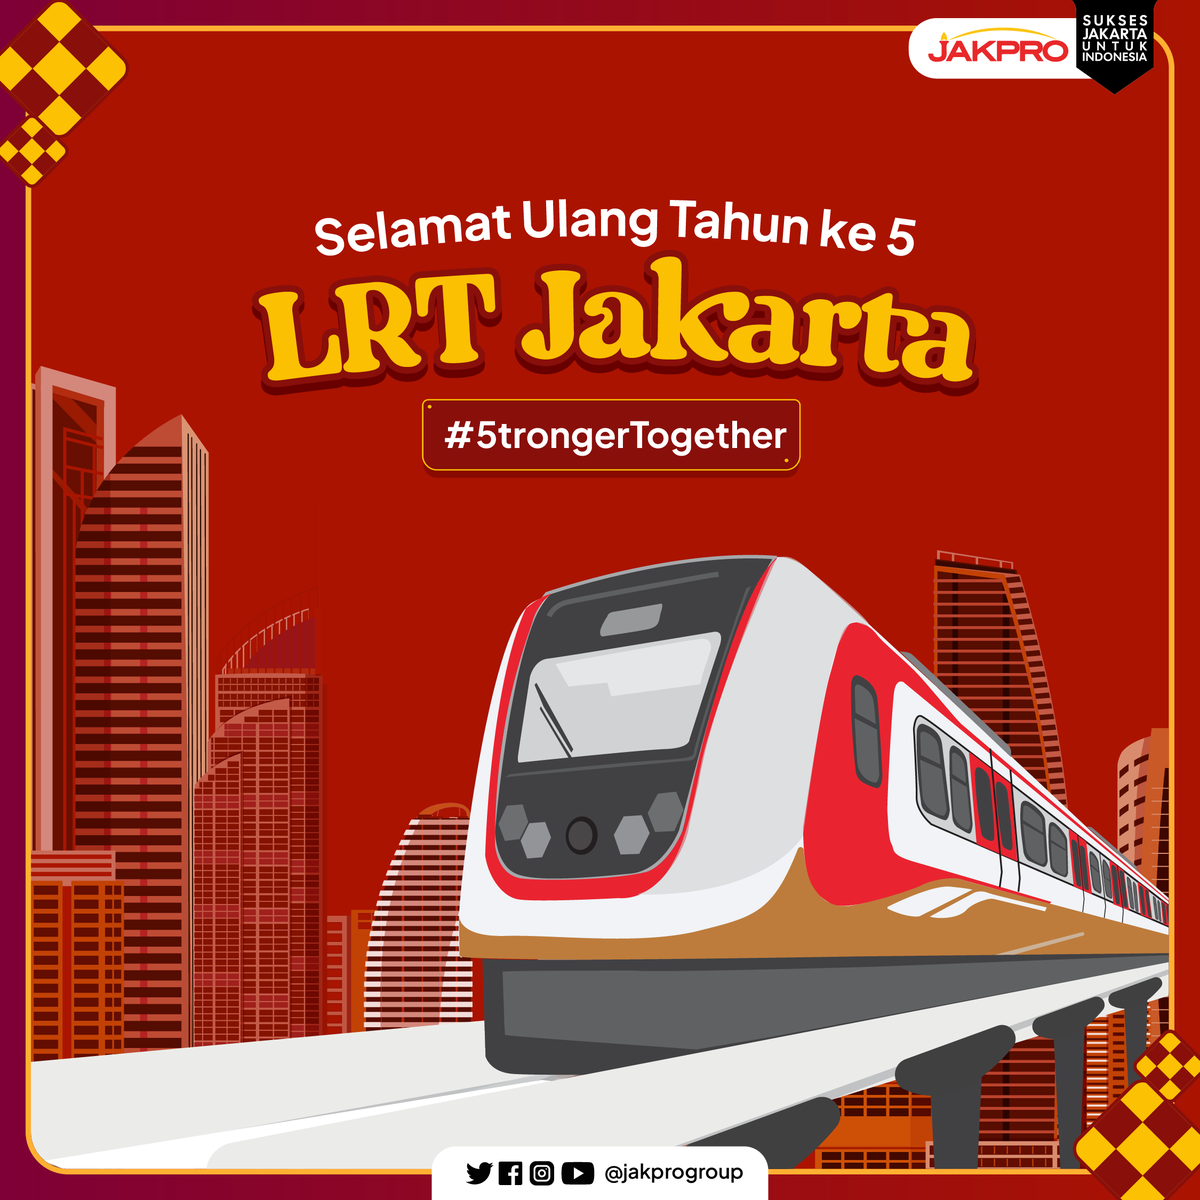 Selamat ulang tahun ke 5, LRT Jakarta. Semoga di usia yang ke 5 ini semakin sigap, siap dan terus semangat melayani kota Jakarta yang maju dan berkelanjutan, menghadirkan transportasi publik ramah lingkungan. #jakpro #lrtj